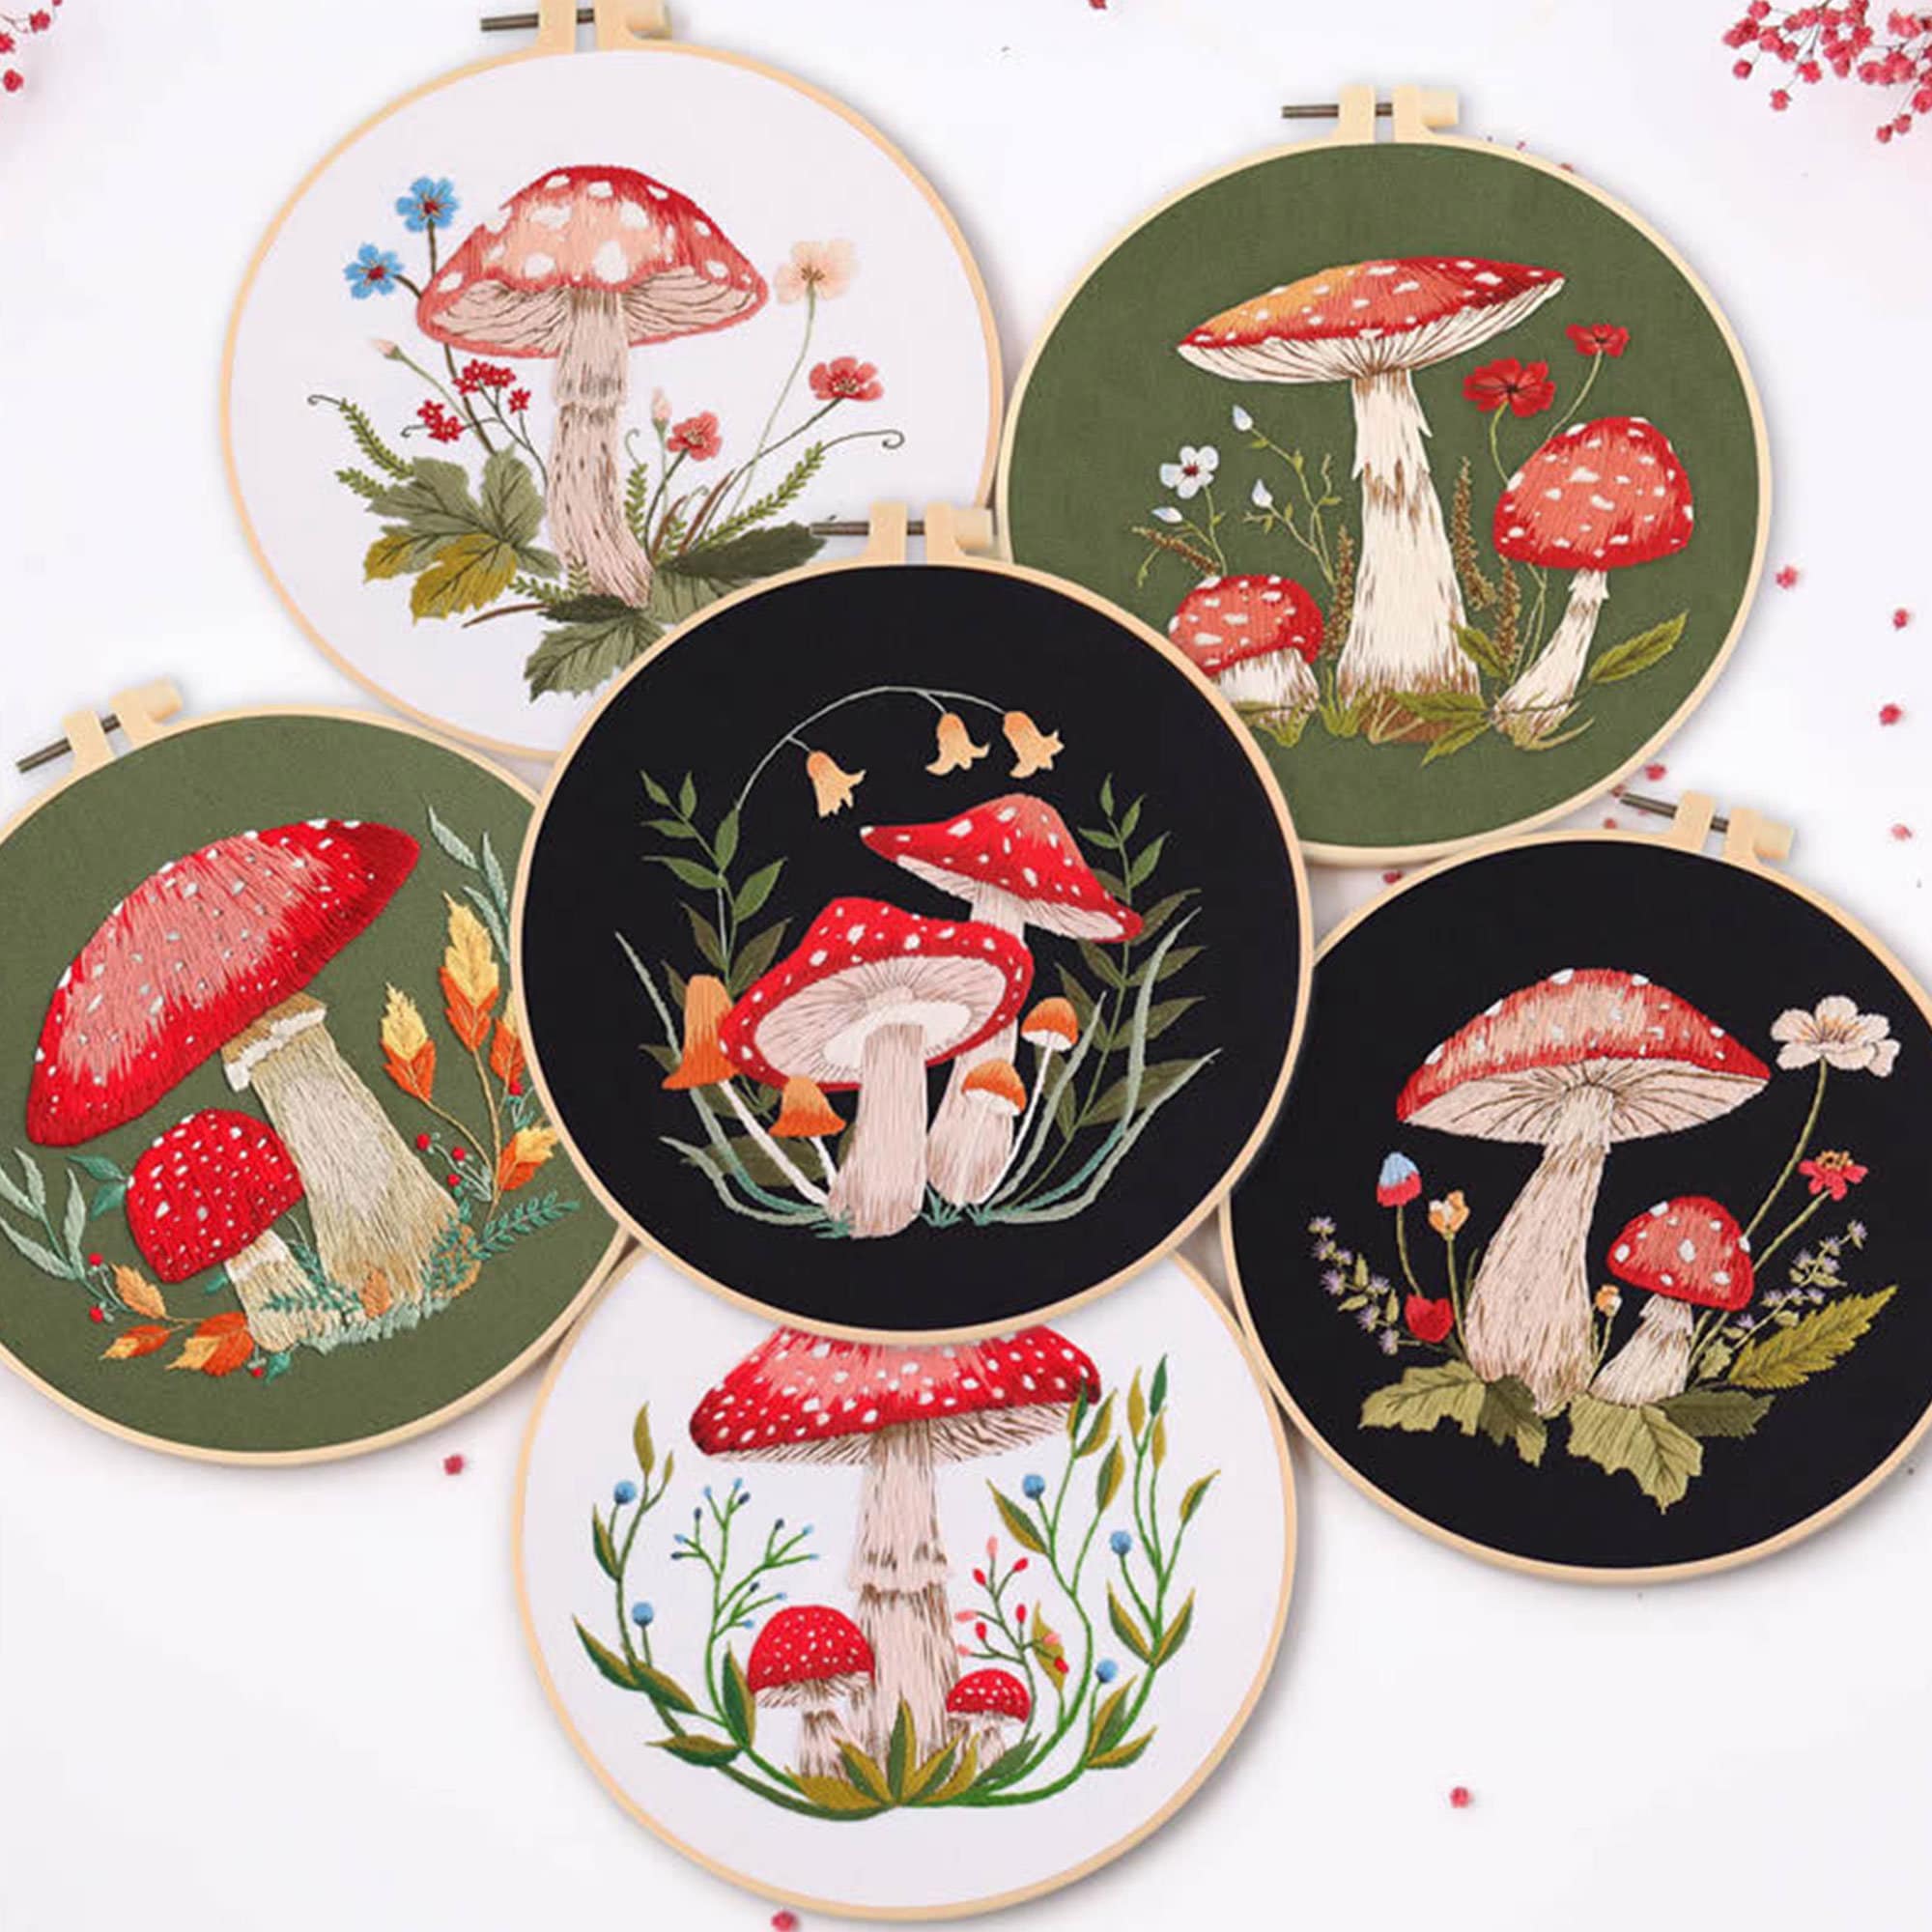 Mushroom Embroidery Digital Kit Beginner, Nature Embroidery PDF DIY KITS,  Mushroom Embroidery Diy Kit, Gift for Her, Fall Embroidery 